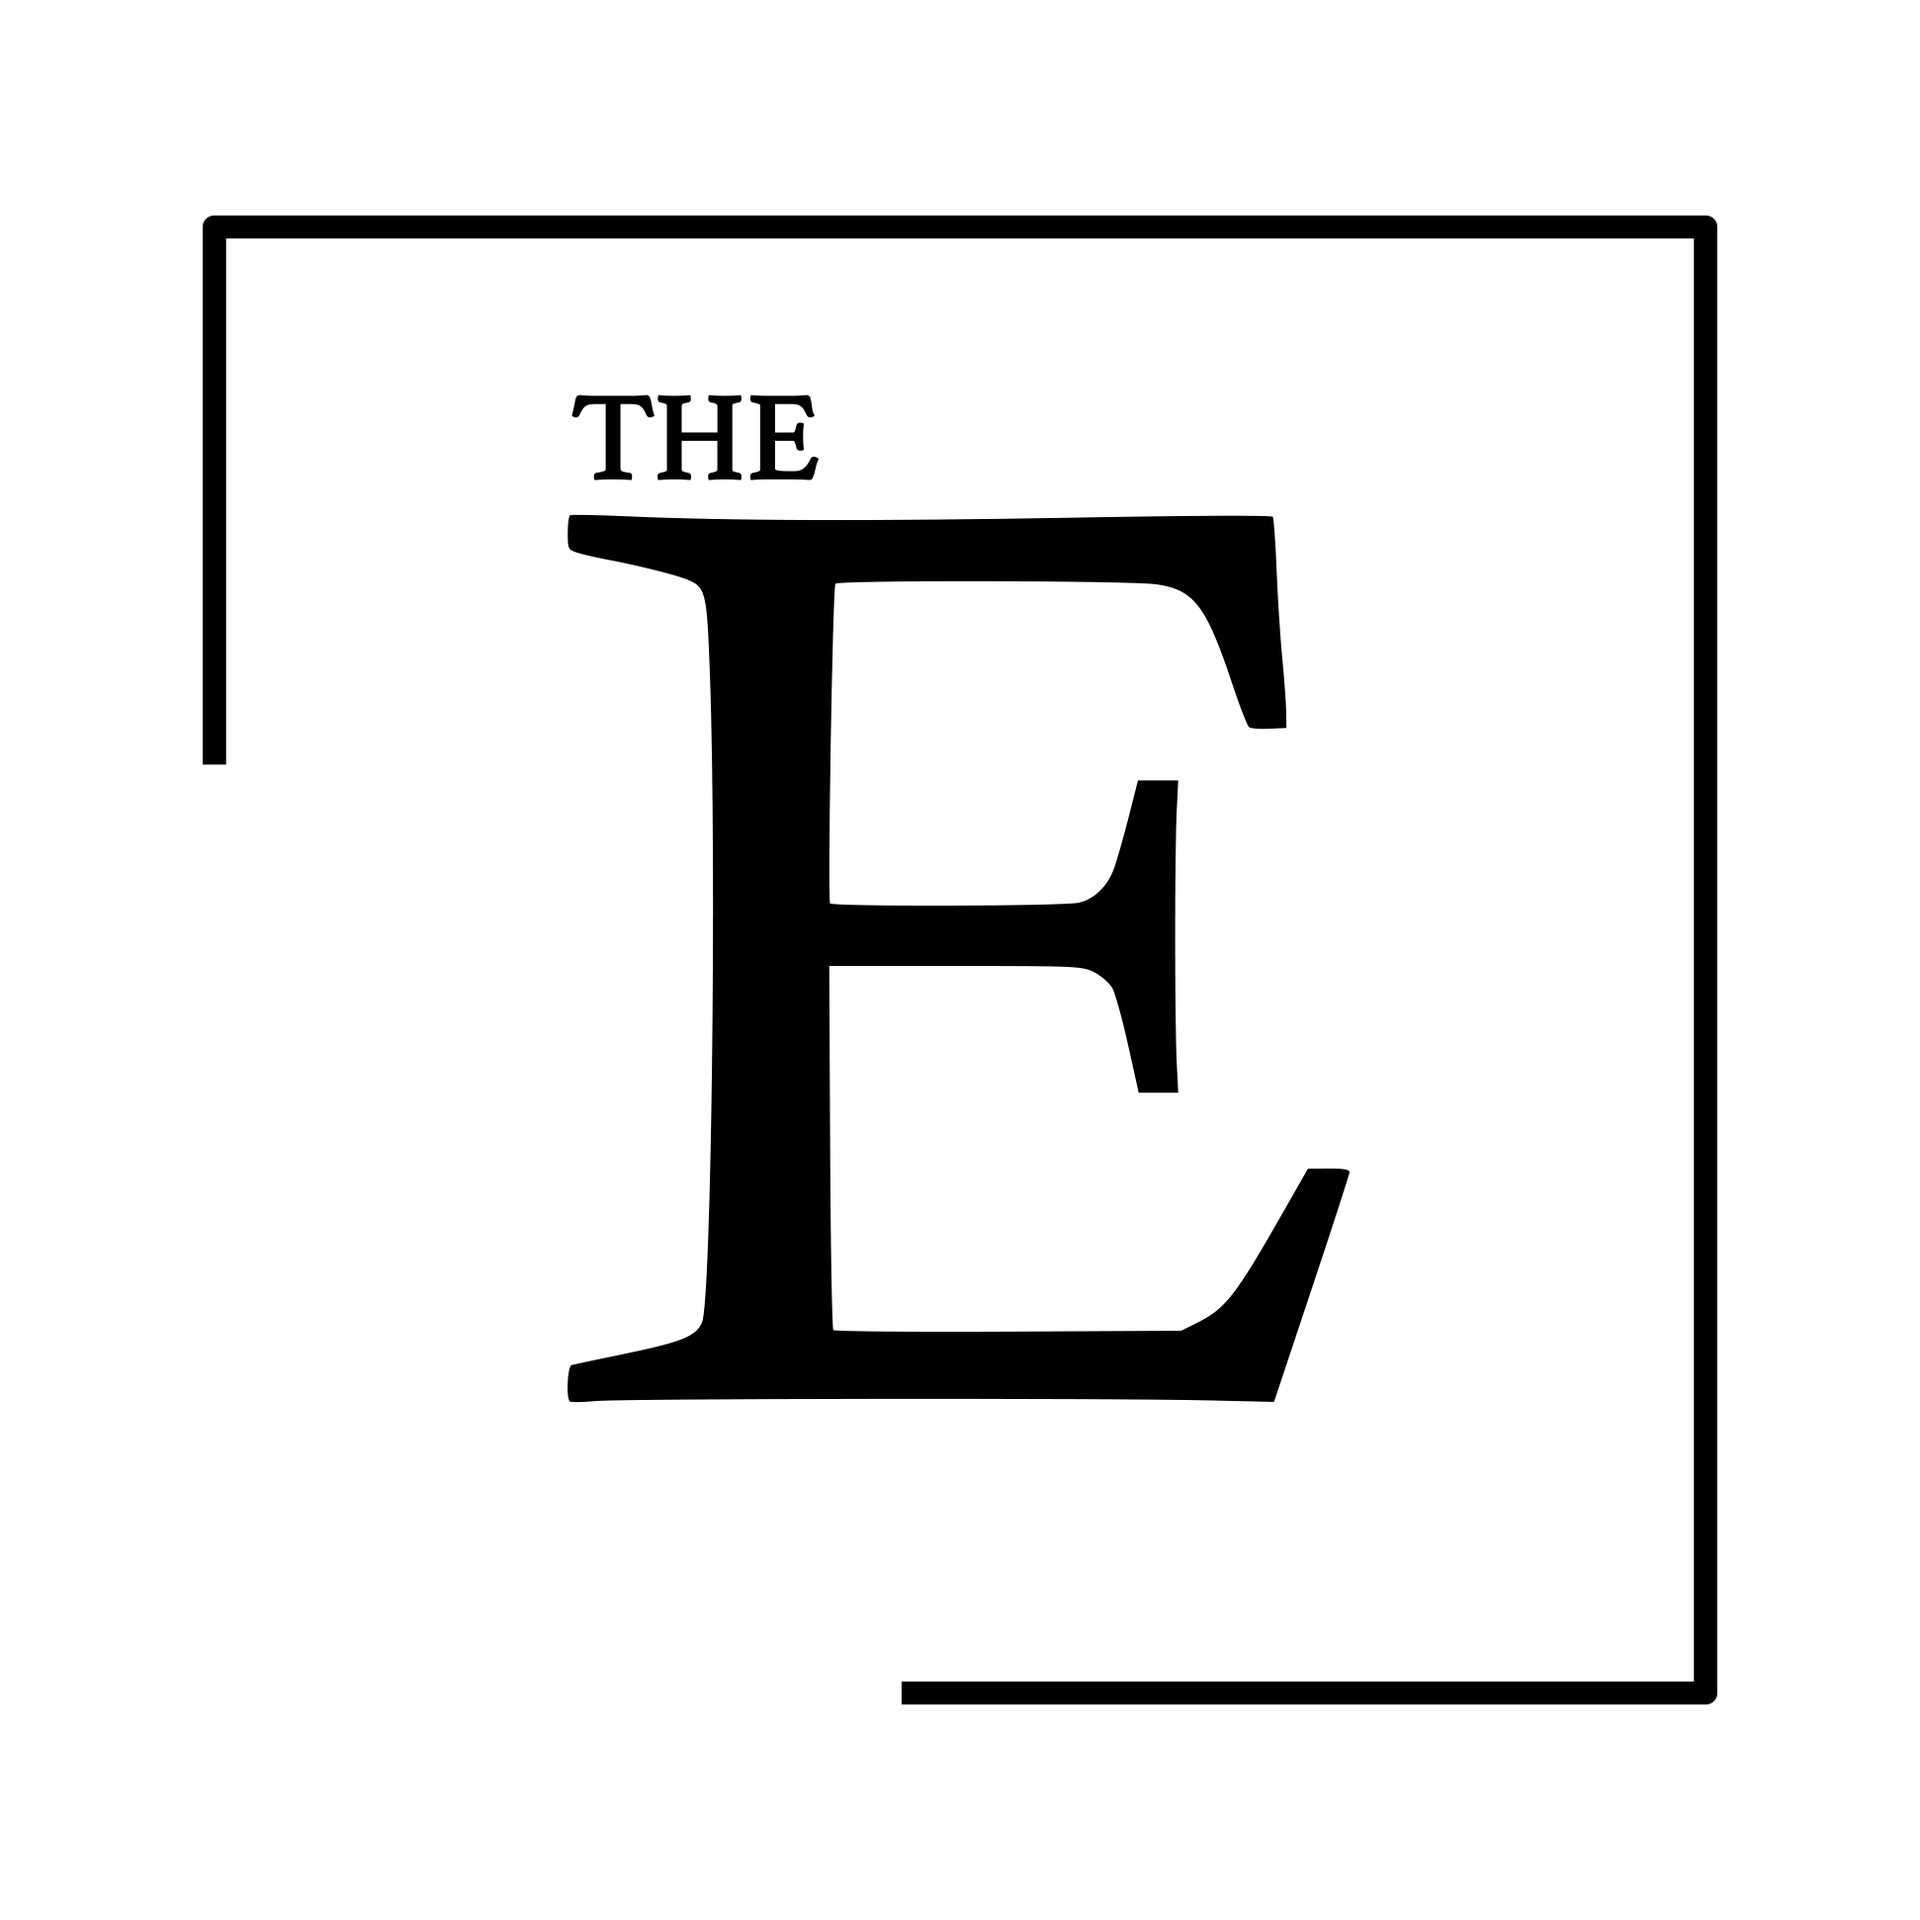 The E Logo